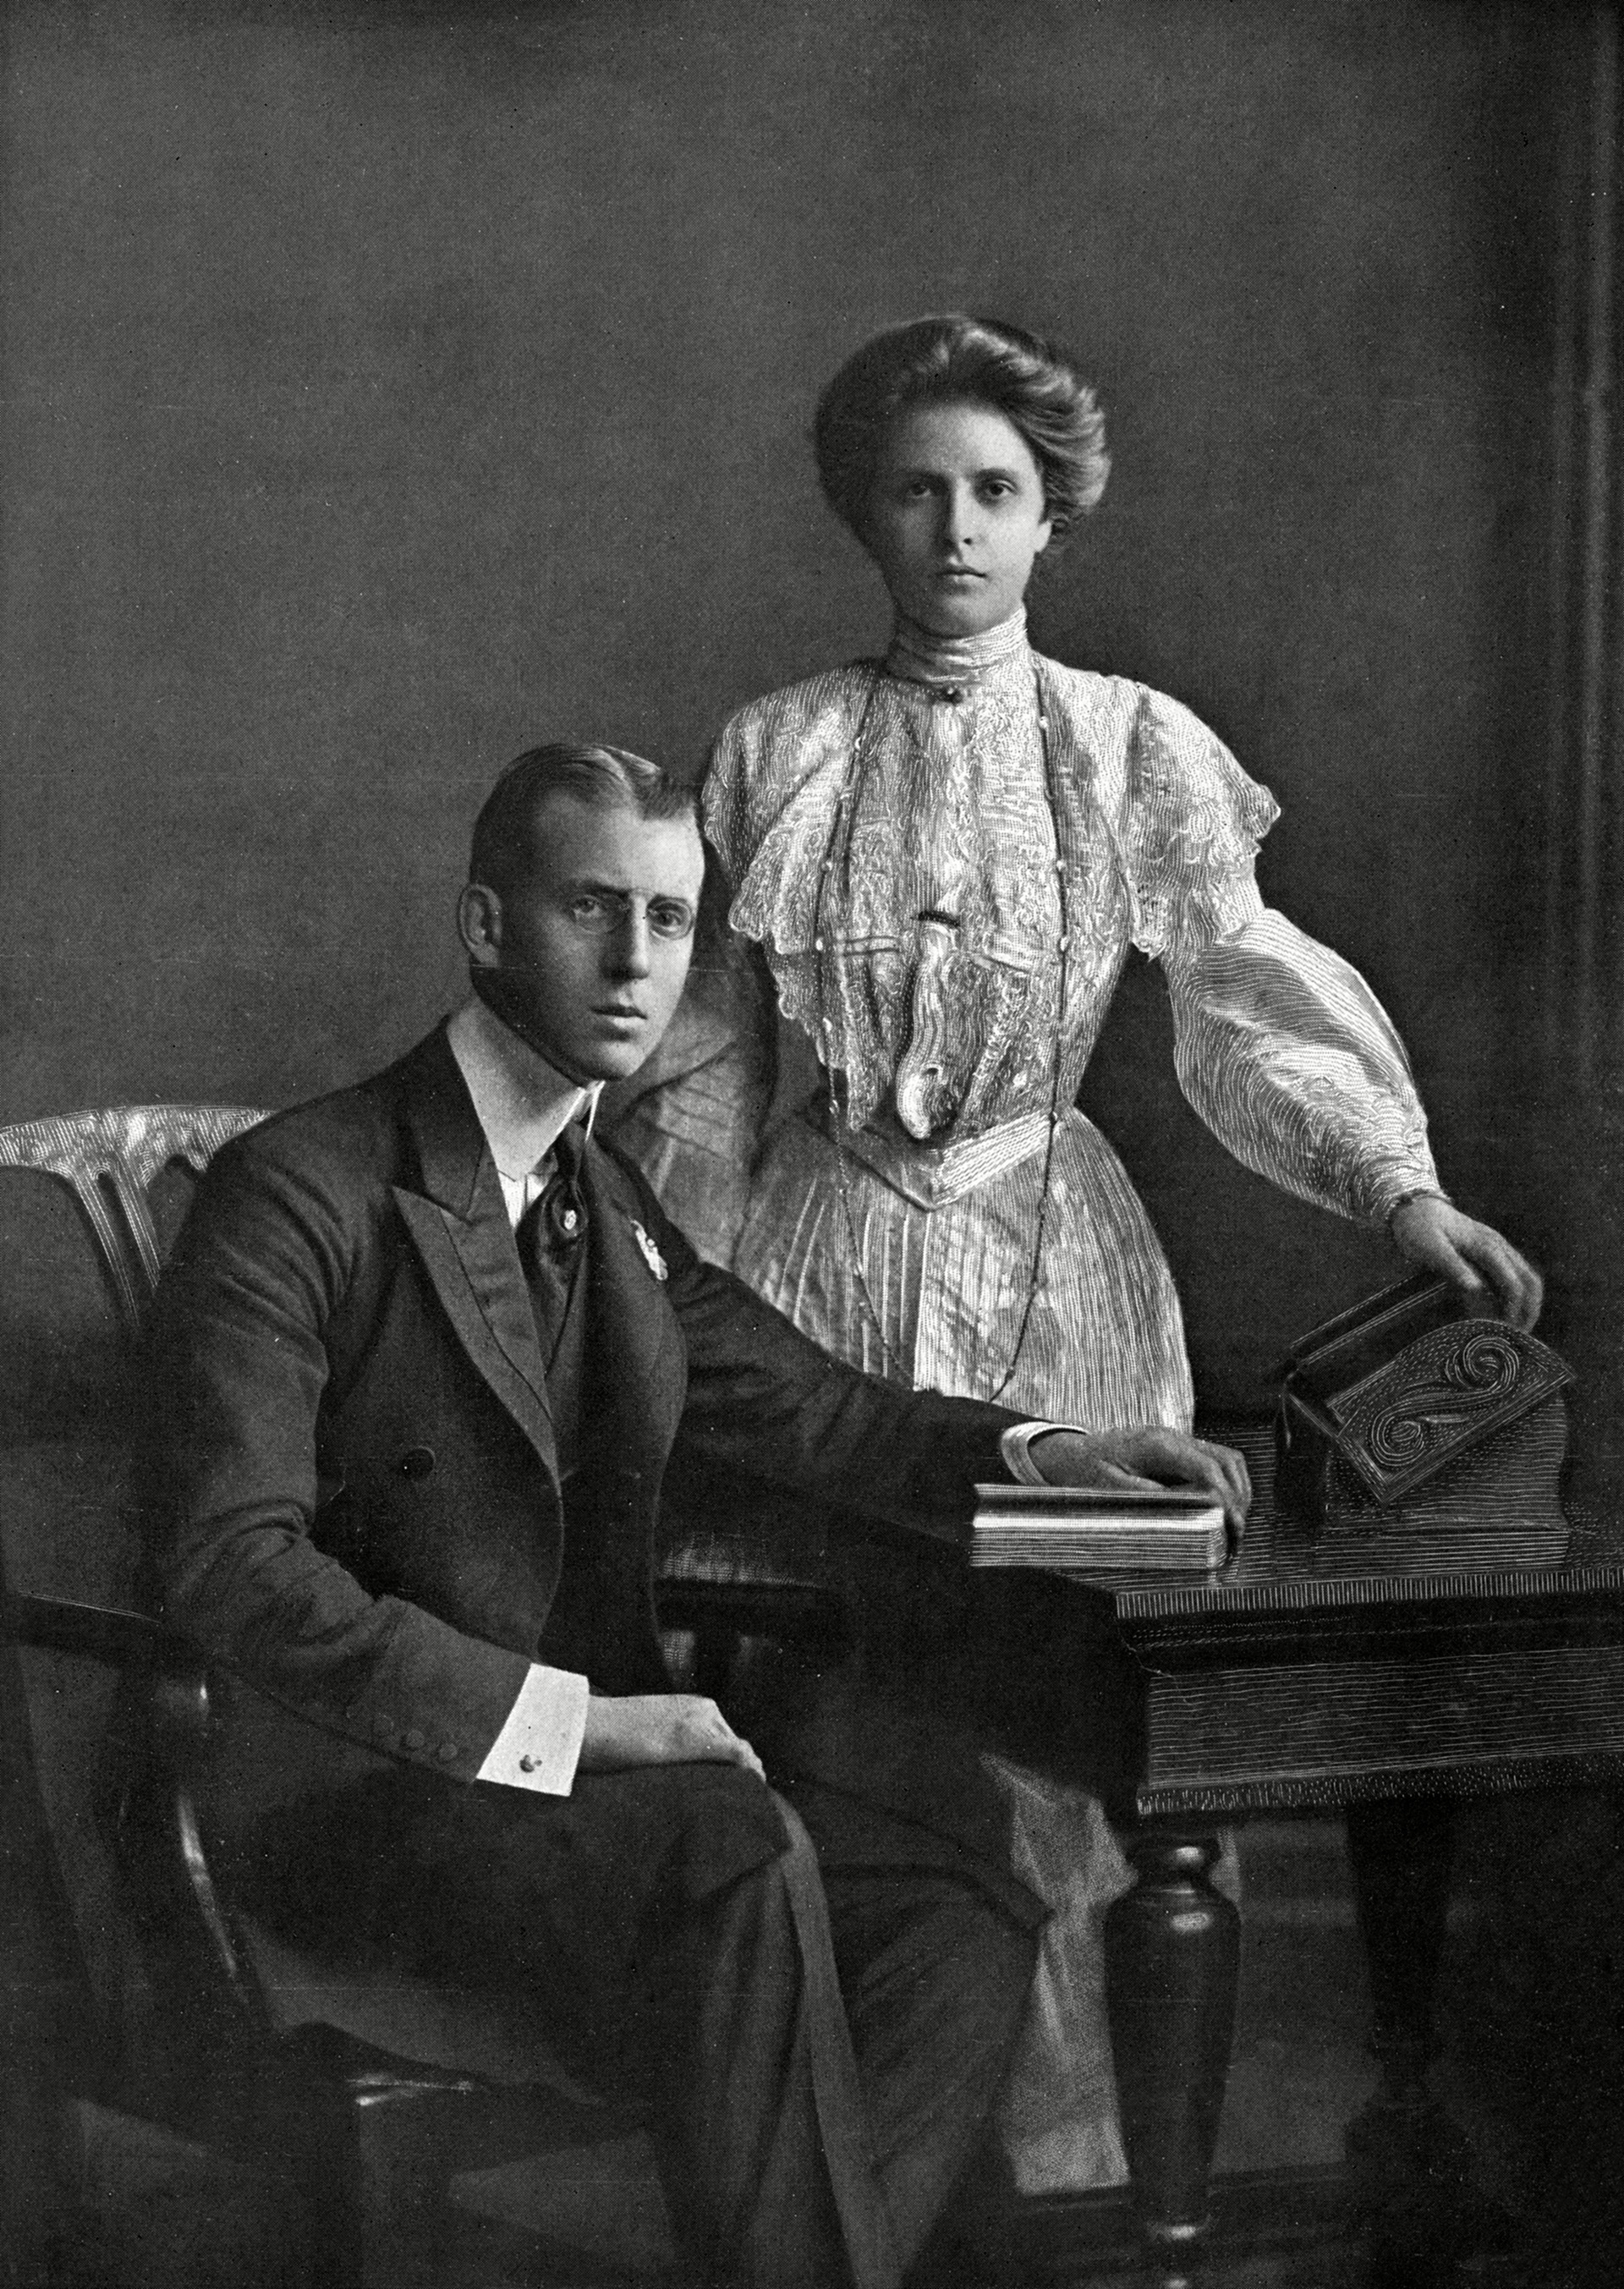 Alicia junto al príncipe Andres de Grecia y Dinamarca, poco antes de casarse en 1903 (Shutterstock)
